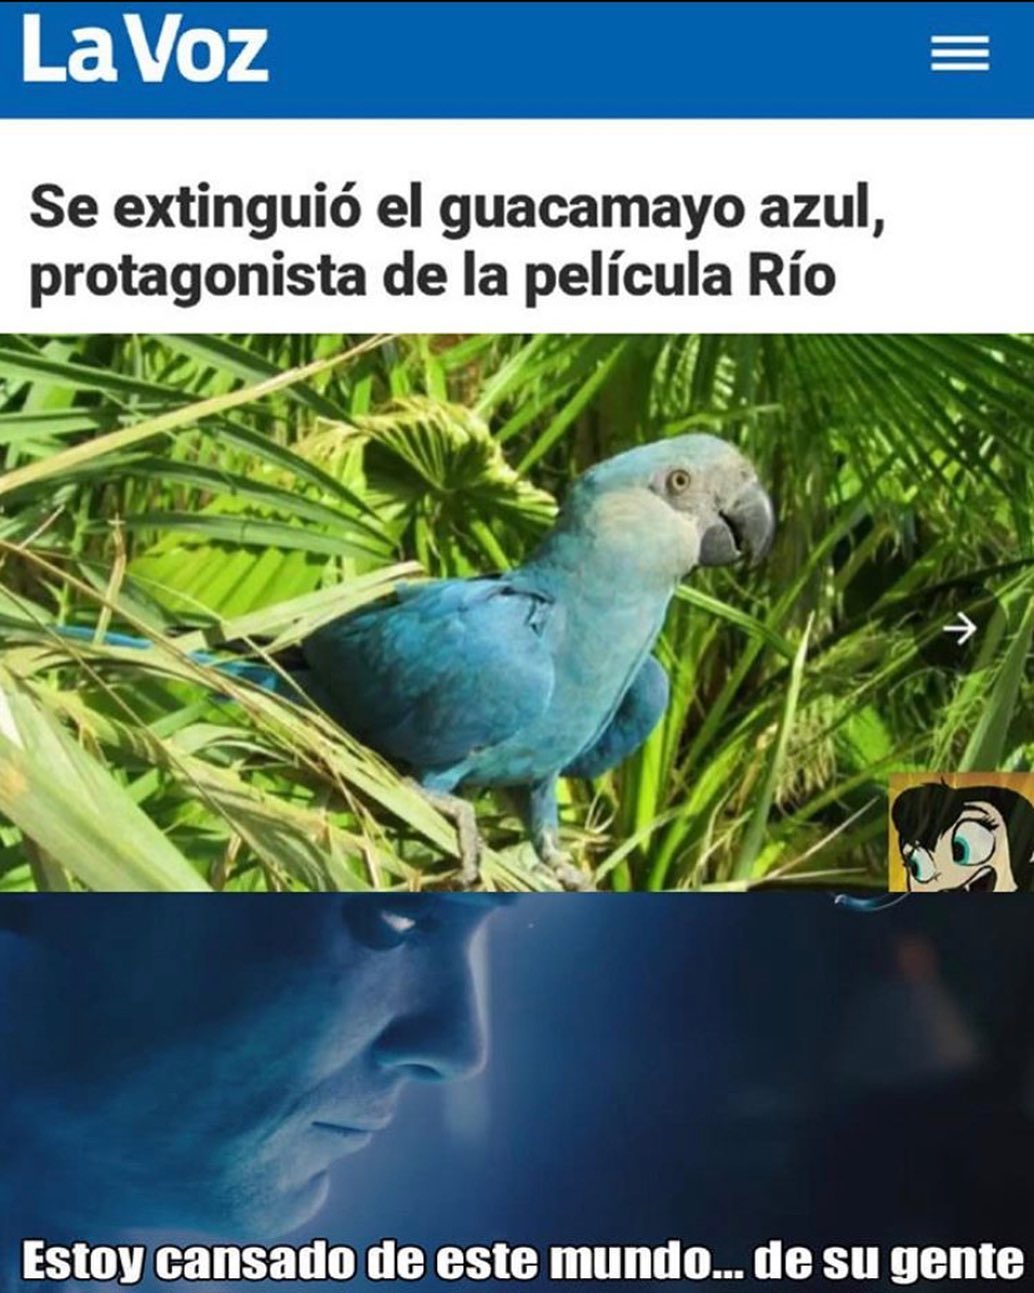 LaVoz. Se extinguió el guacamayo azul, protagonista de la película Río. Estoy cansado de este mundo... de su gente.